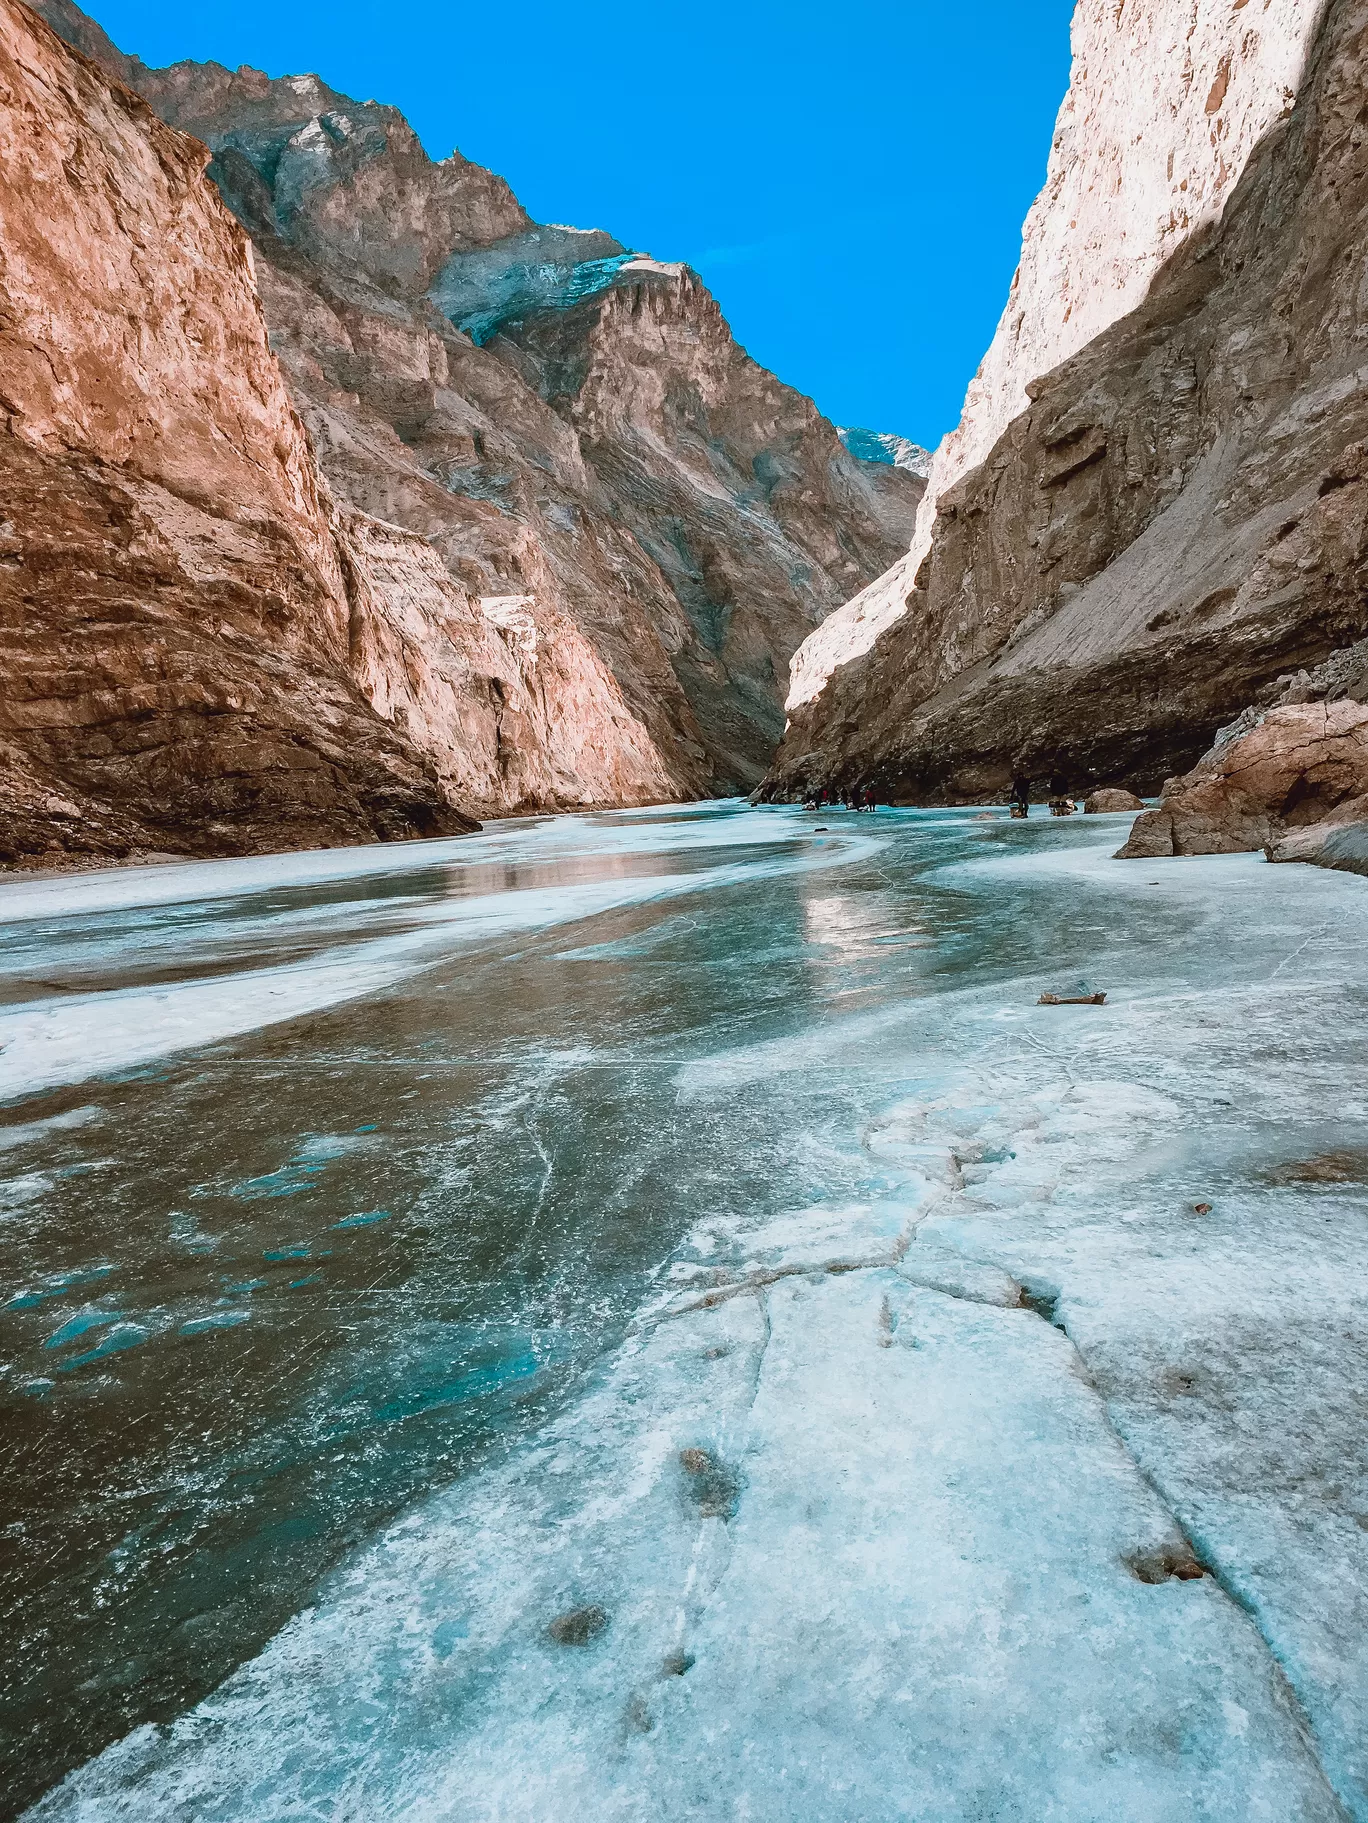 Photo of Chadar trek - Trekking In Ladakh - Frozen River Trekking In Ladakh By Anita Mathivanan